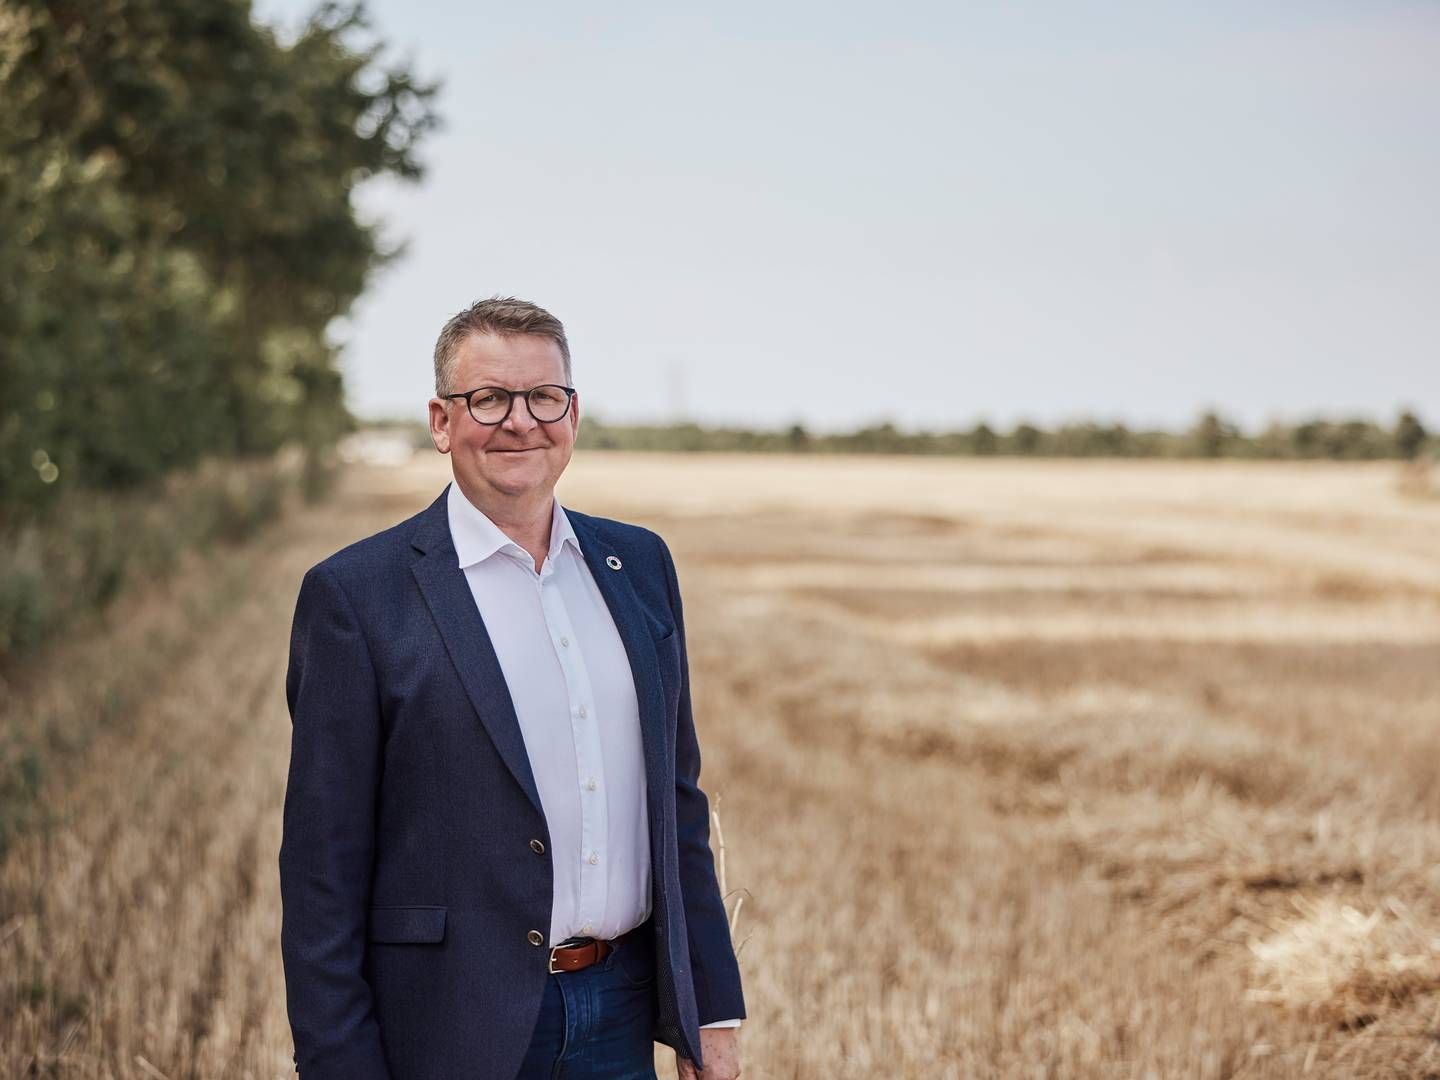 Adm. direktør Anders H. Nørgaard fortæller, at investeringen sker "i forlængelse" af Firstfarms nyligt annoncerede strategi. | Foto: Firstfarms / PR